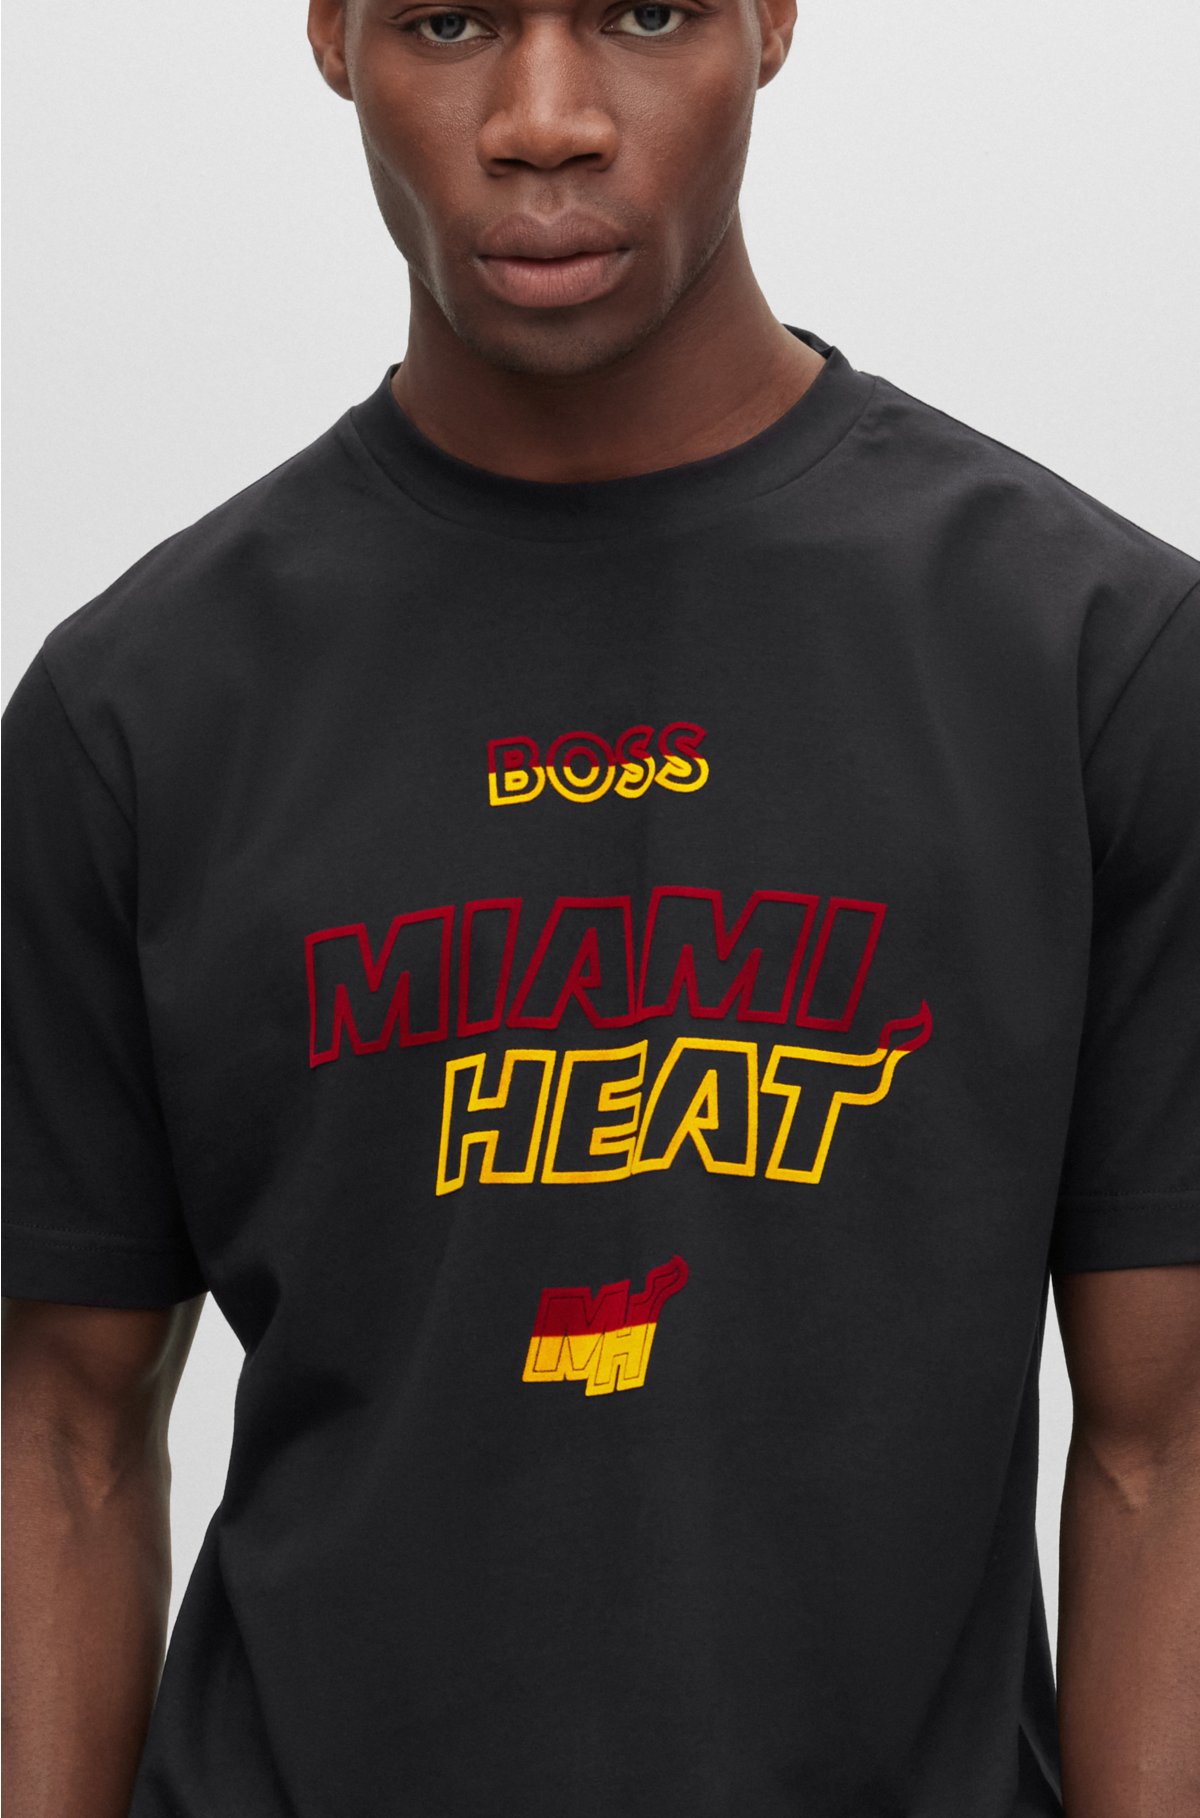 Miami Heat Nike Block Graphic T-Shirt - White - Mens